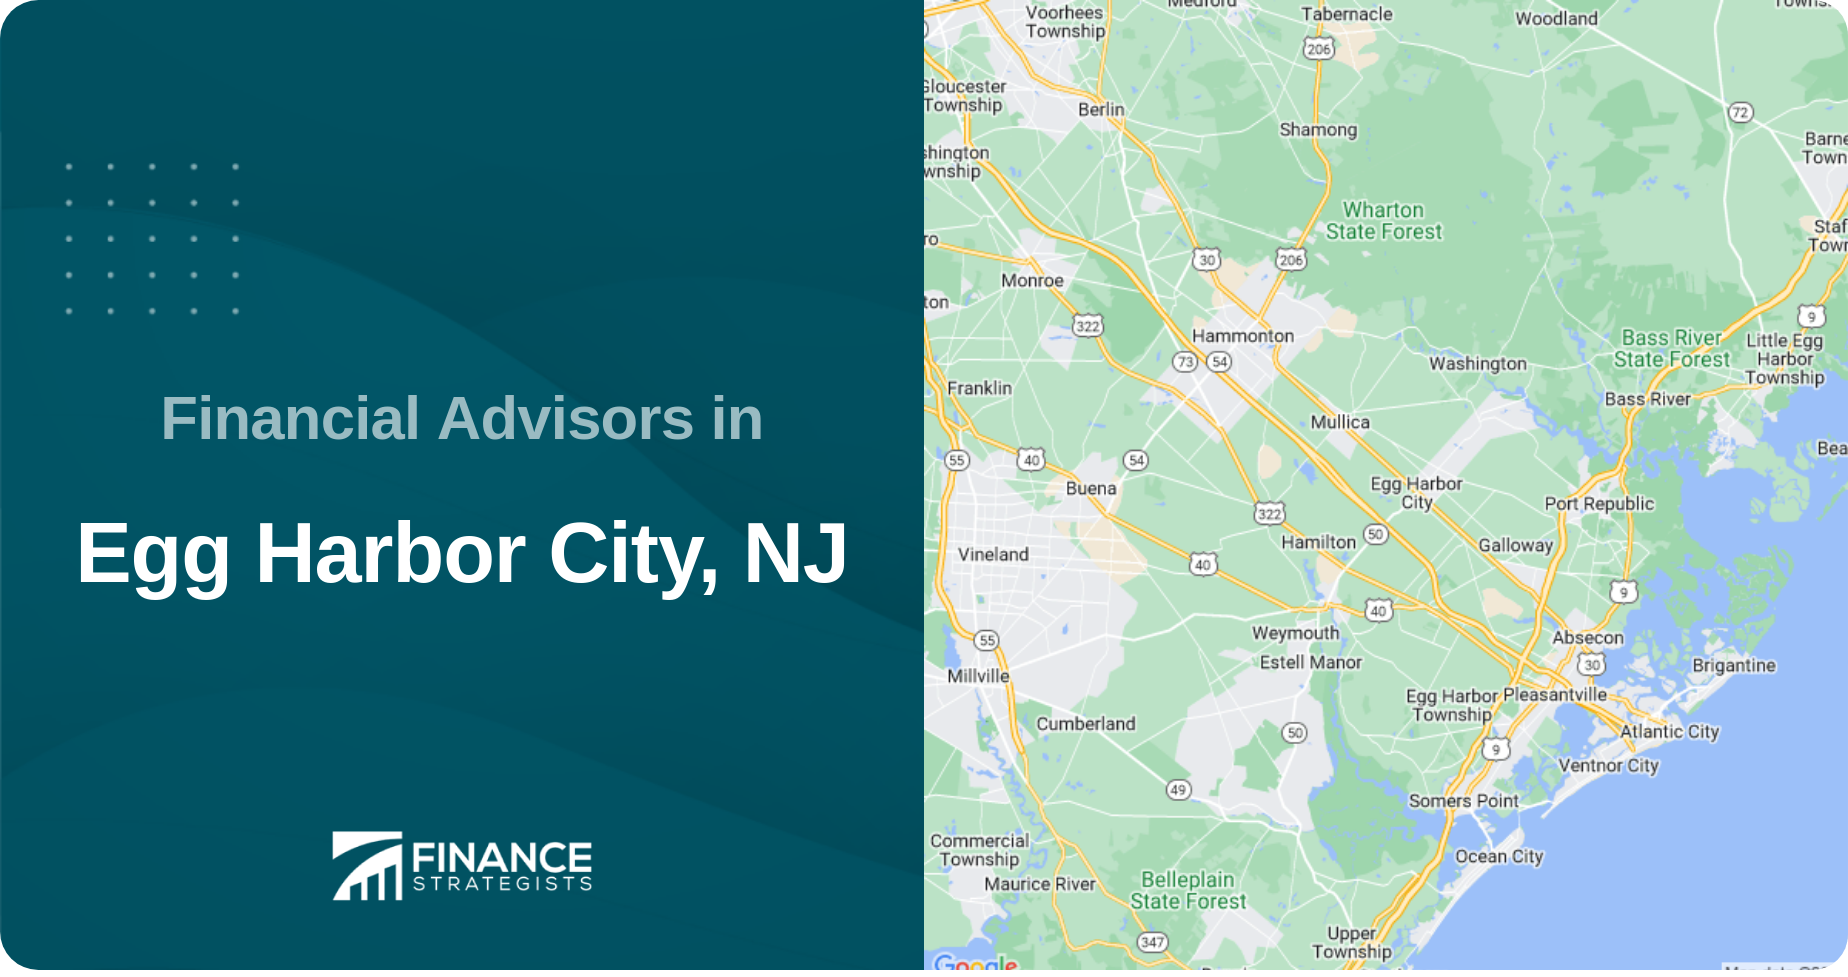 Financial Advisors in Egg Harbor City, NJ